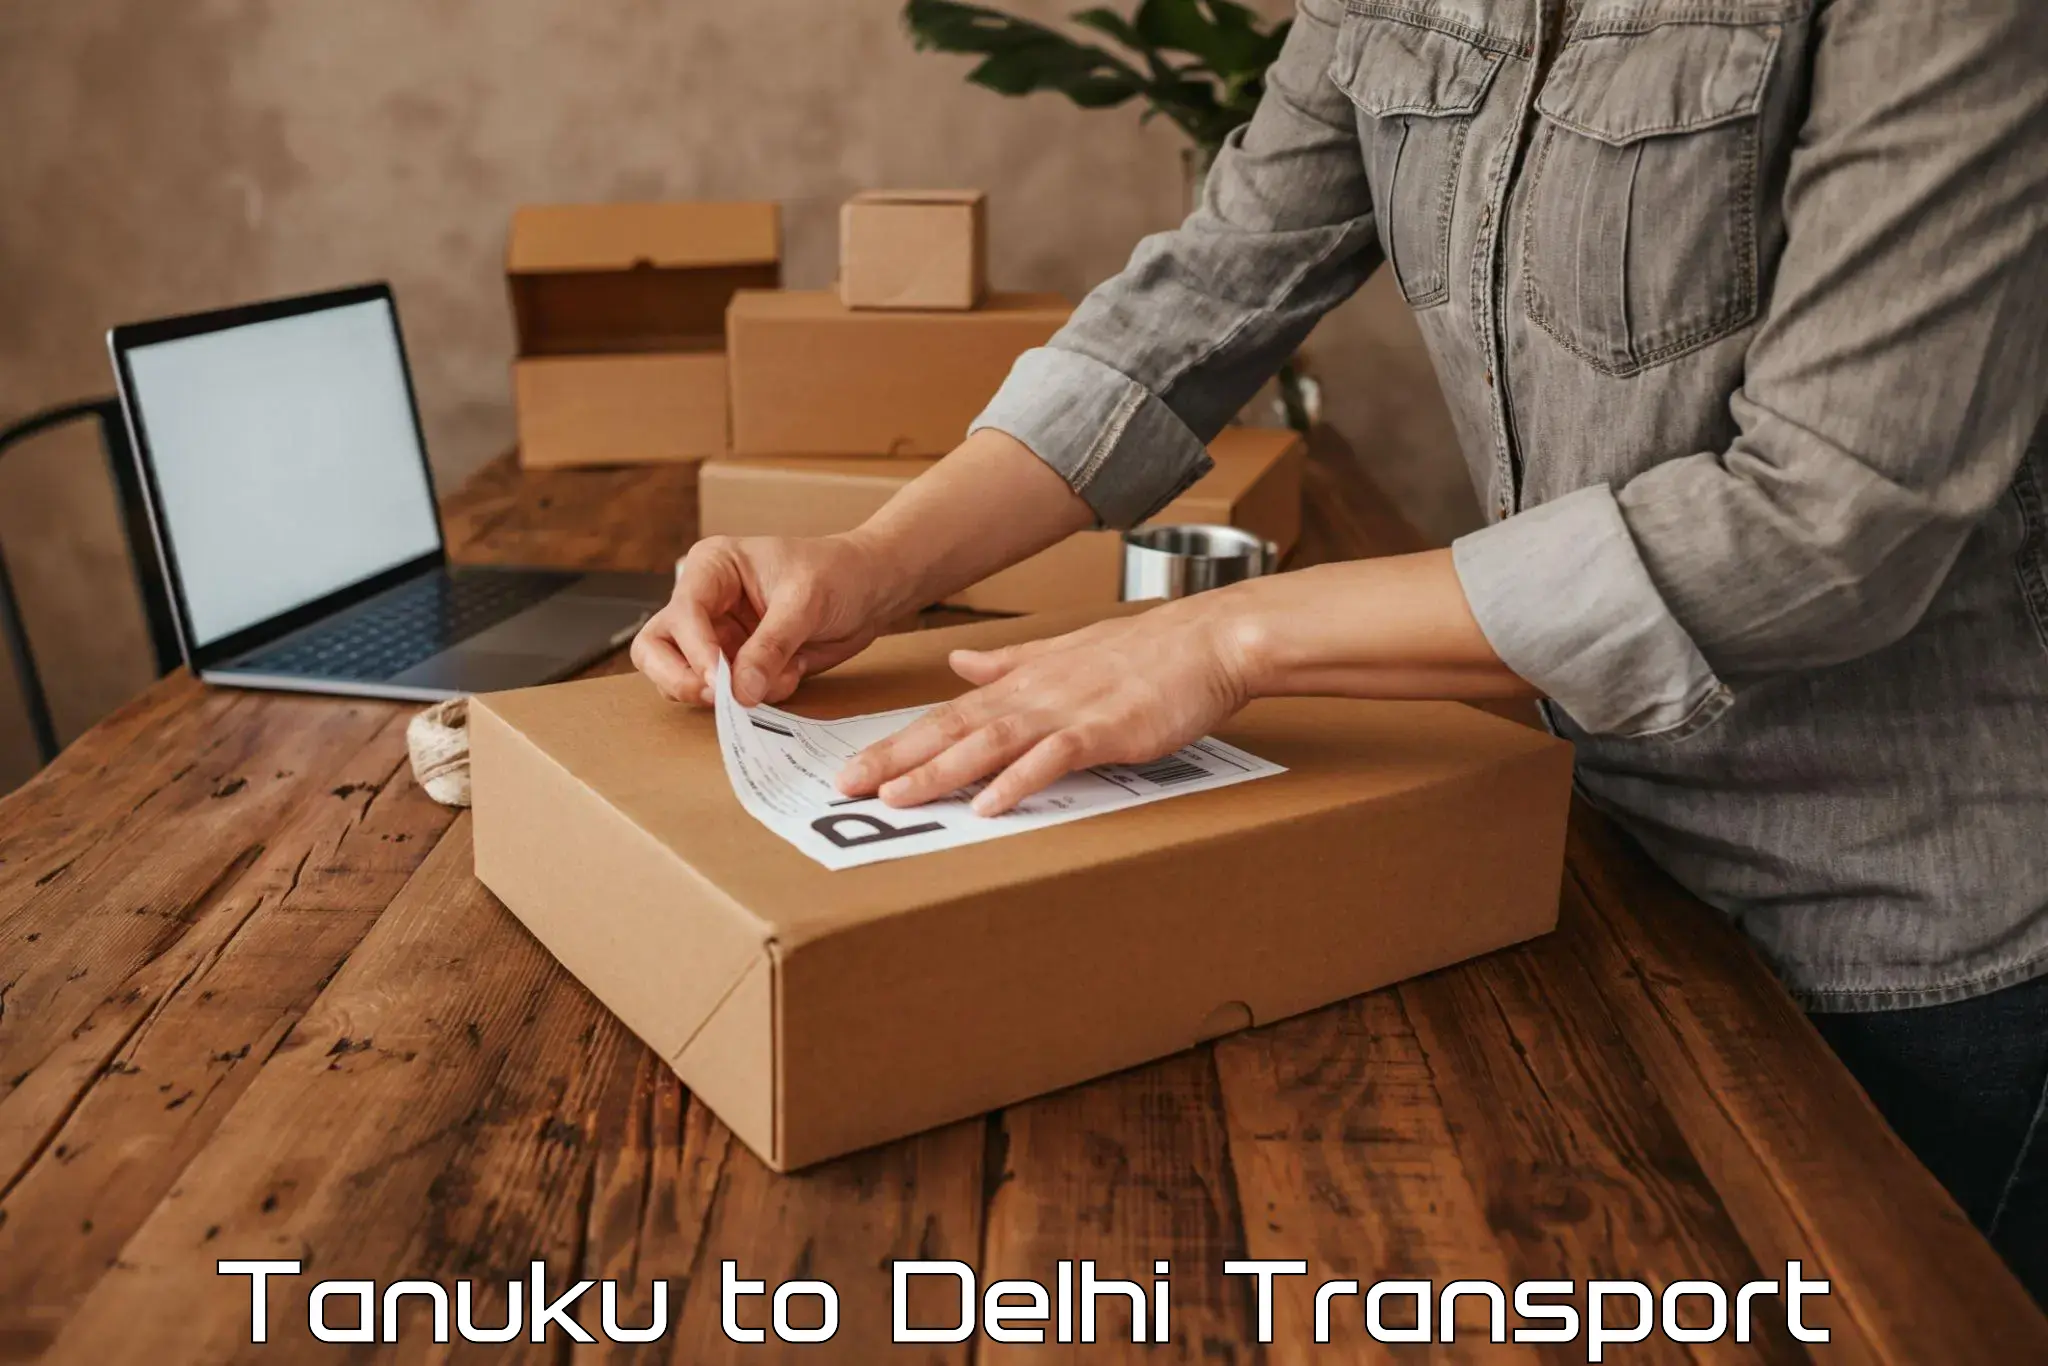 Two wheeler transport services Tanuku to Jamia Millia Islamia New Delhi